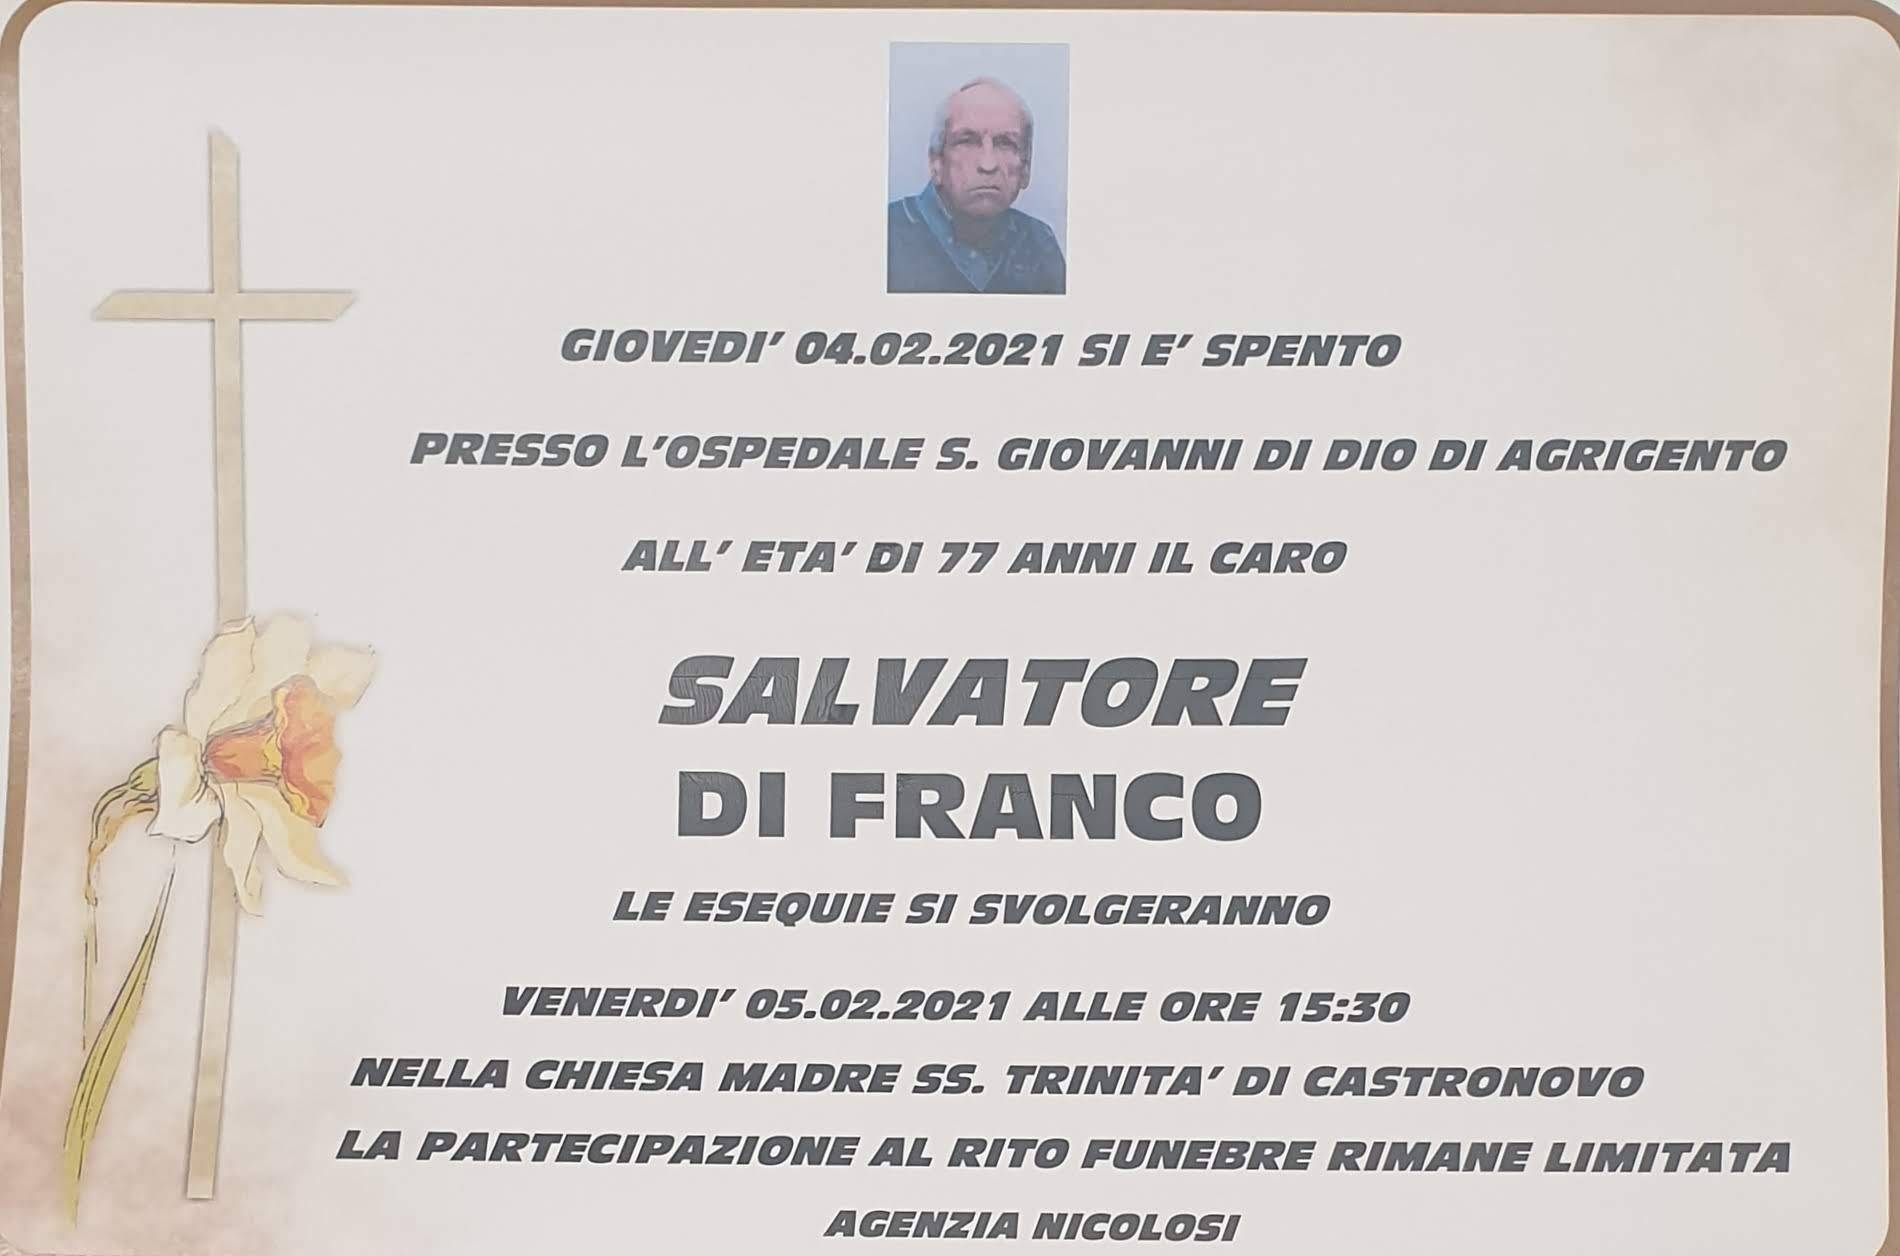 Salvatore Di Franco